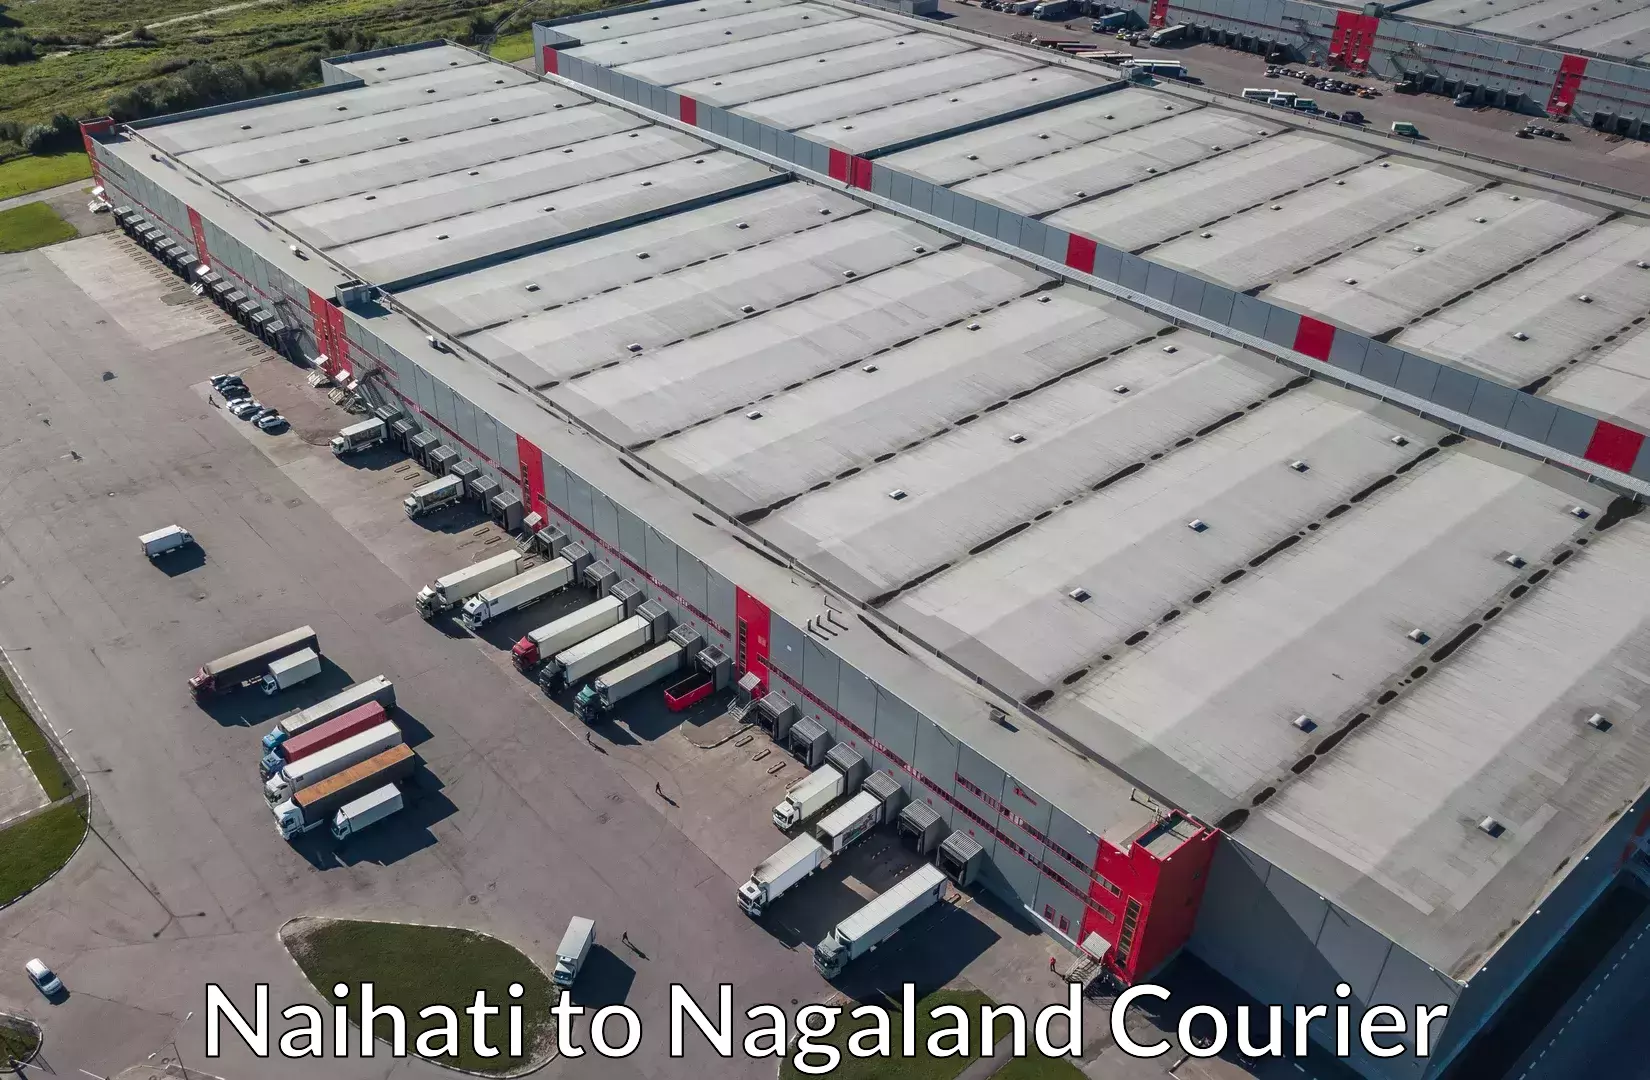 Baggage shipping experts Naihati to Nagaland